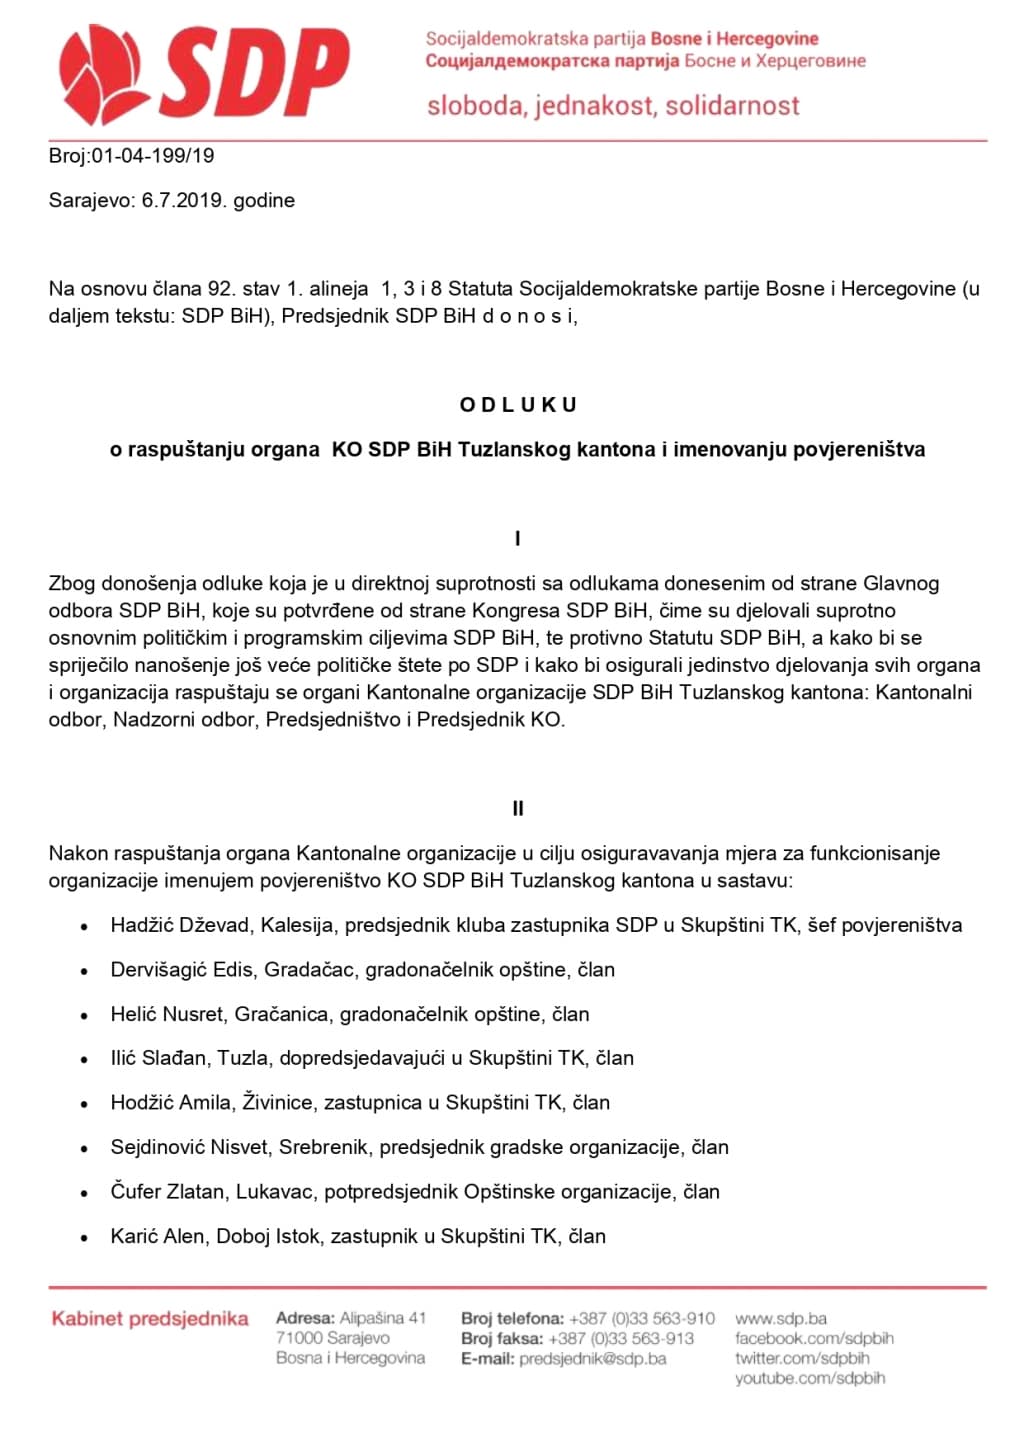 Odluka Predsjednika SDP BiH_page-0001.jpg